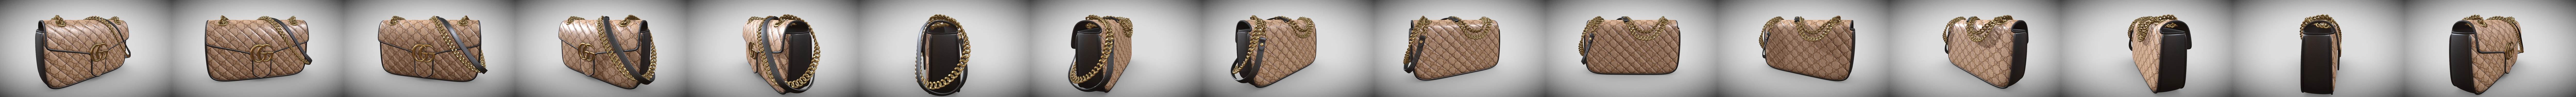 930 Gucci Handbag Images, Stock Photos, 3D objects, & Vectors